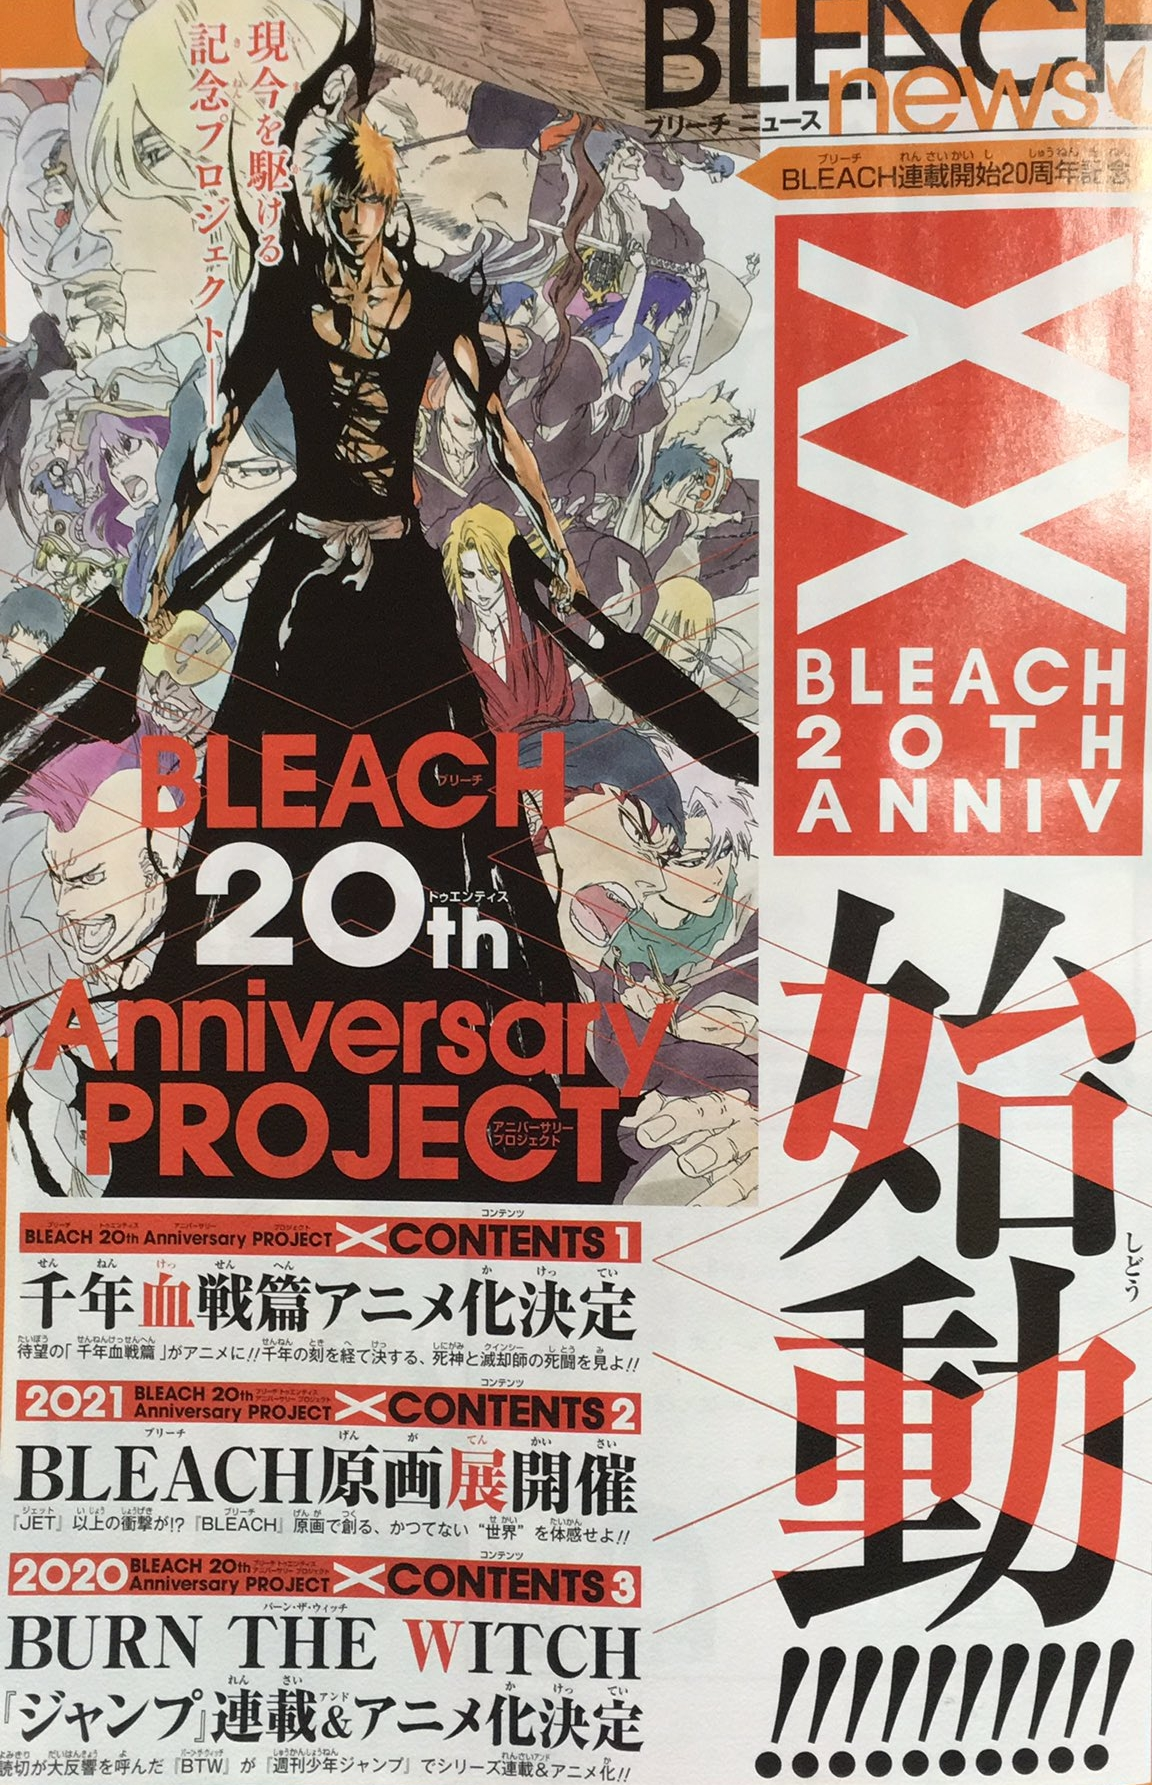 Bleach Manga Set to Return - Crunchyroll News